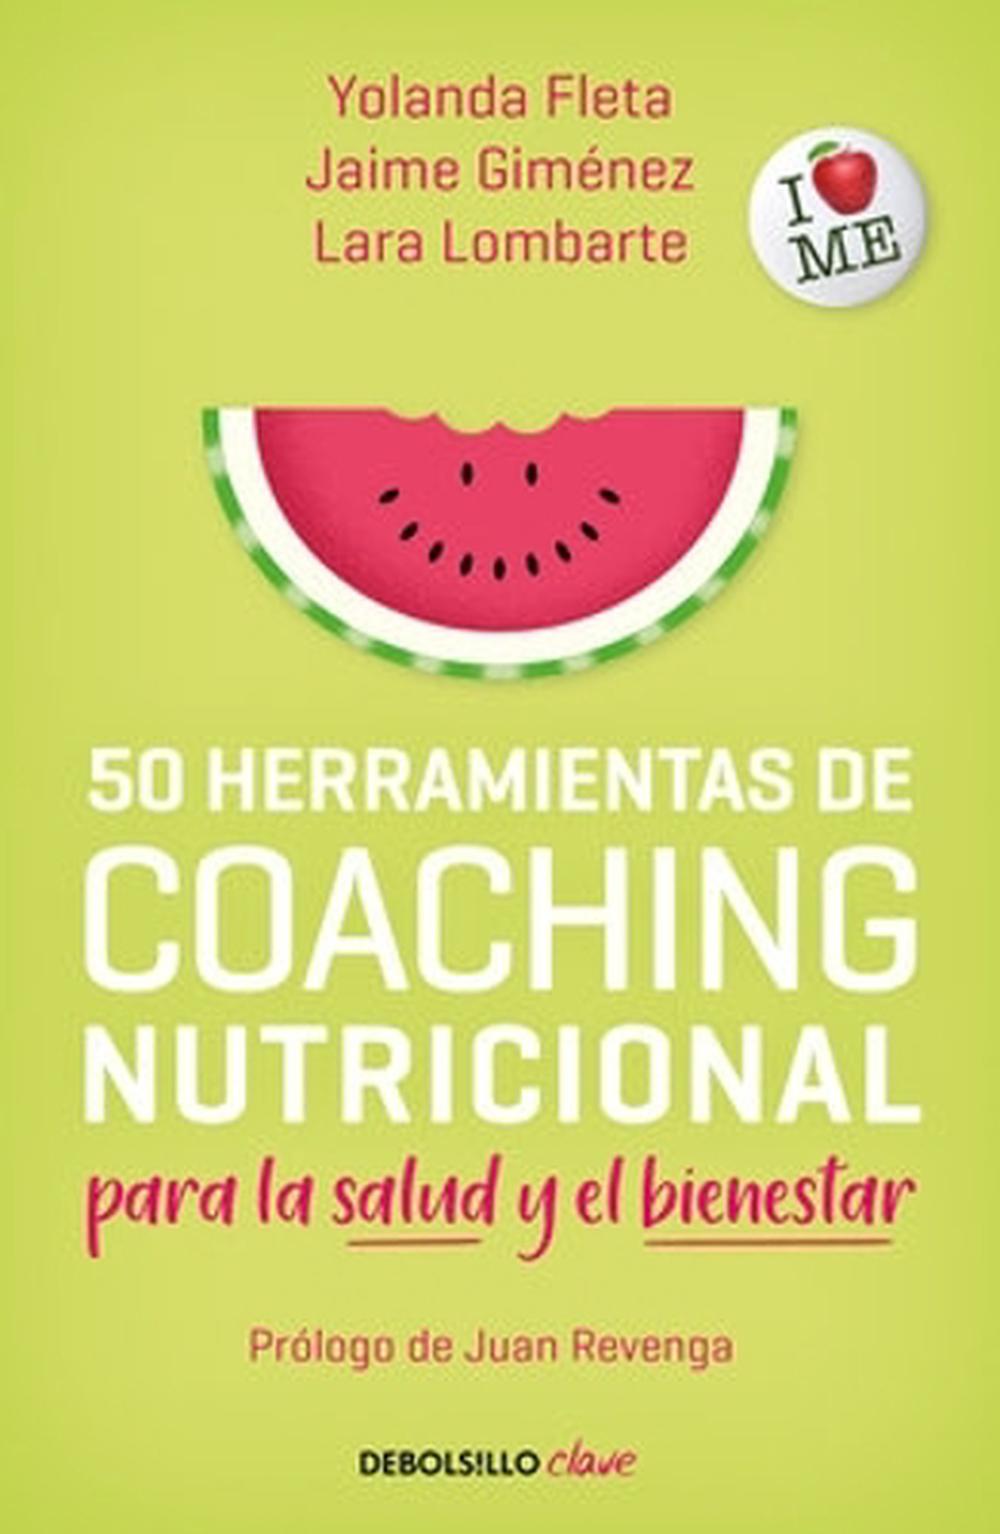 50 Herramientas De Coaching Para La Salud Y El Bienestar 50 Coaching Tools By 2669 Picclick 6796